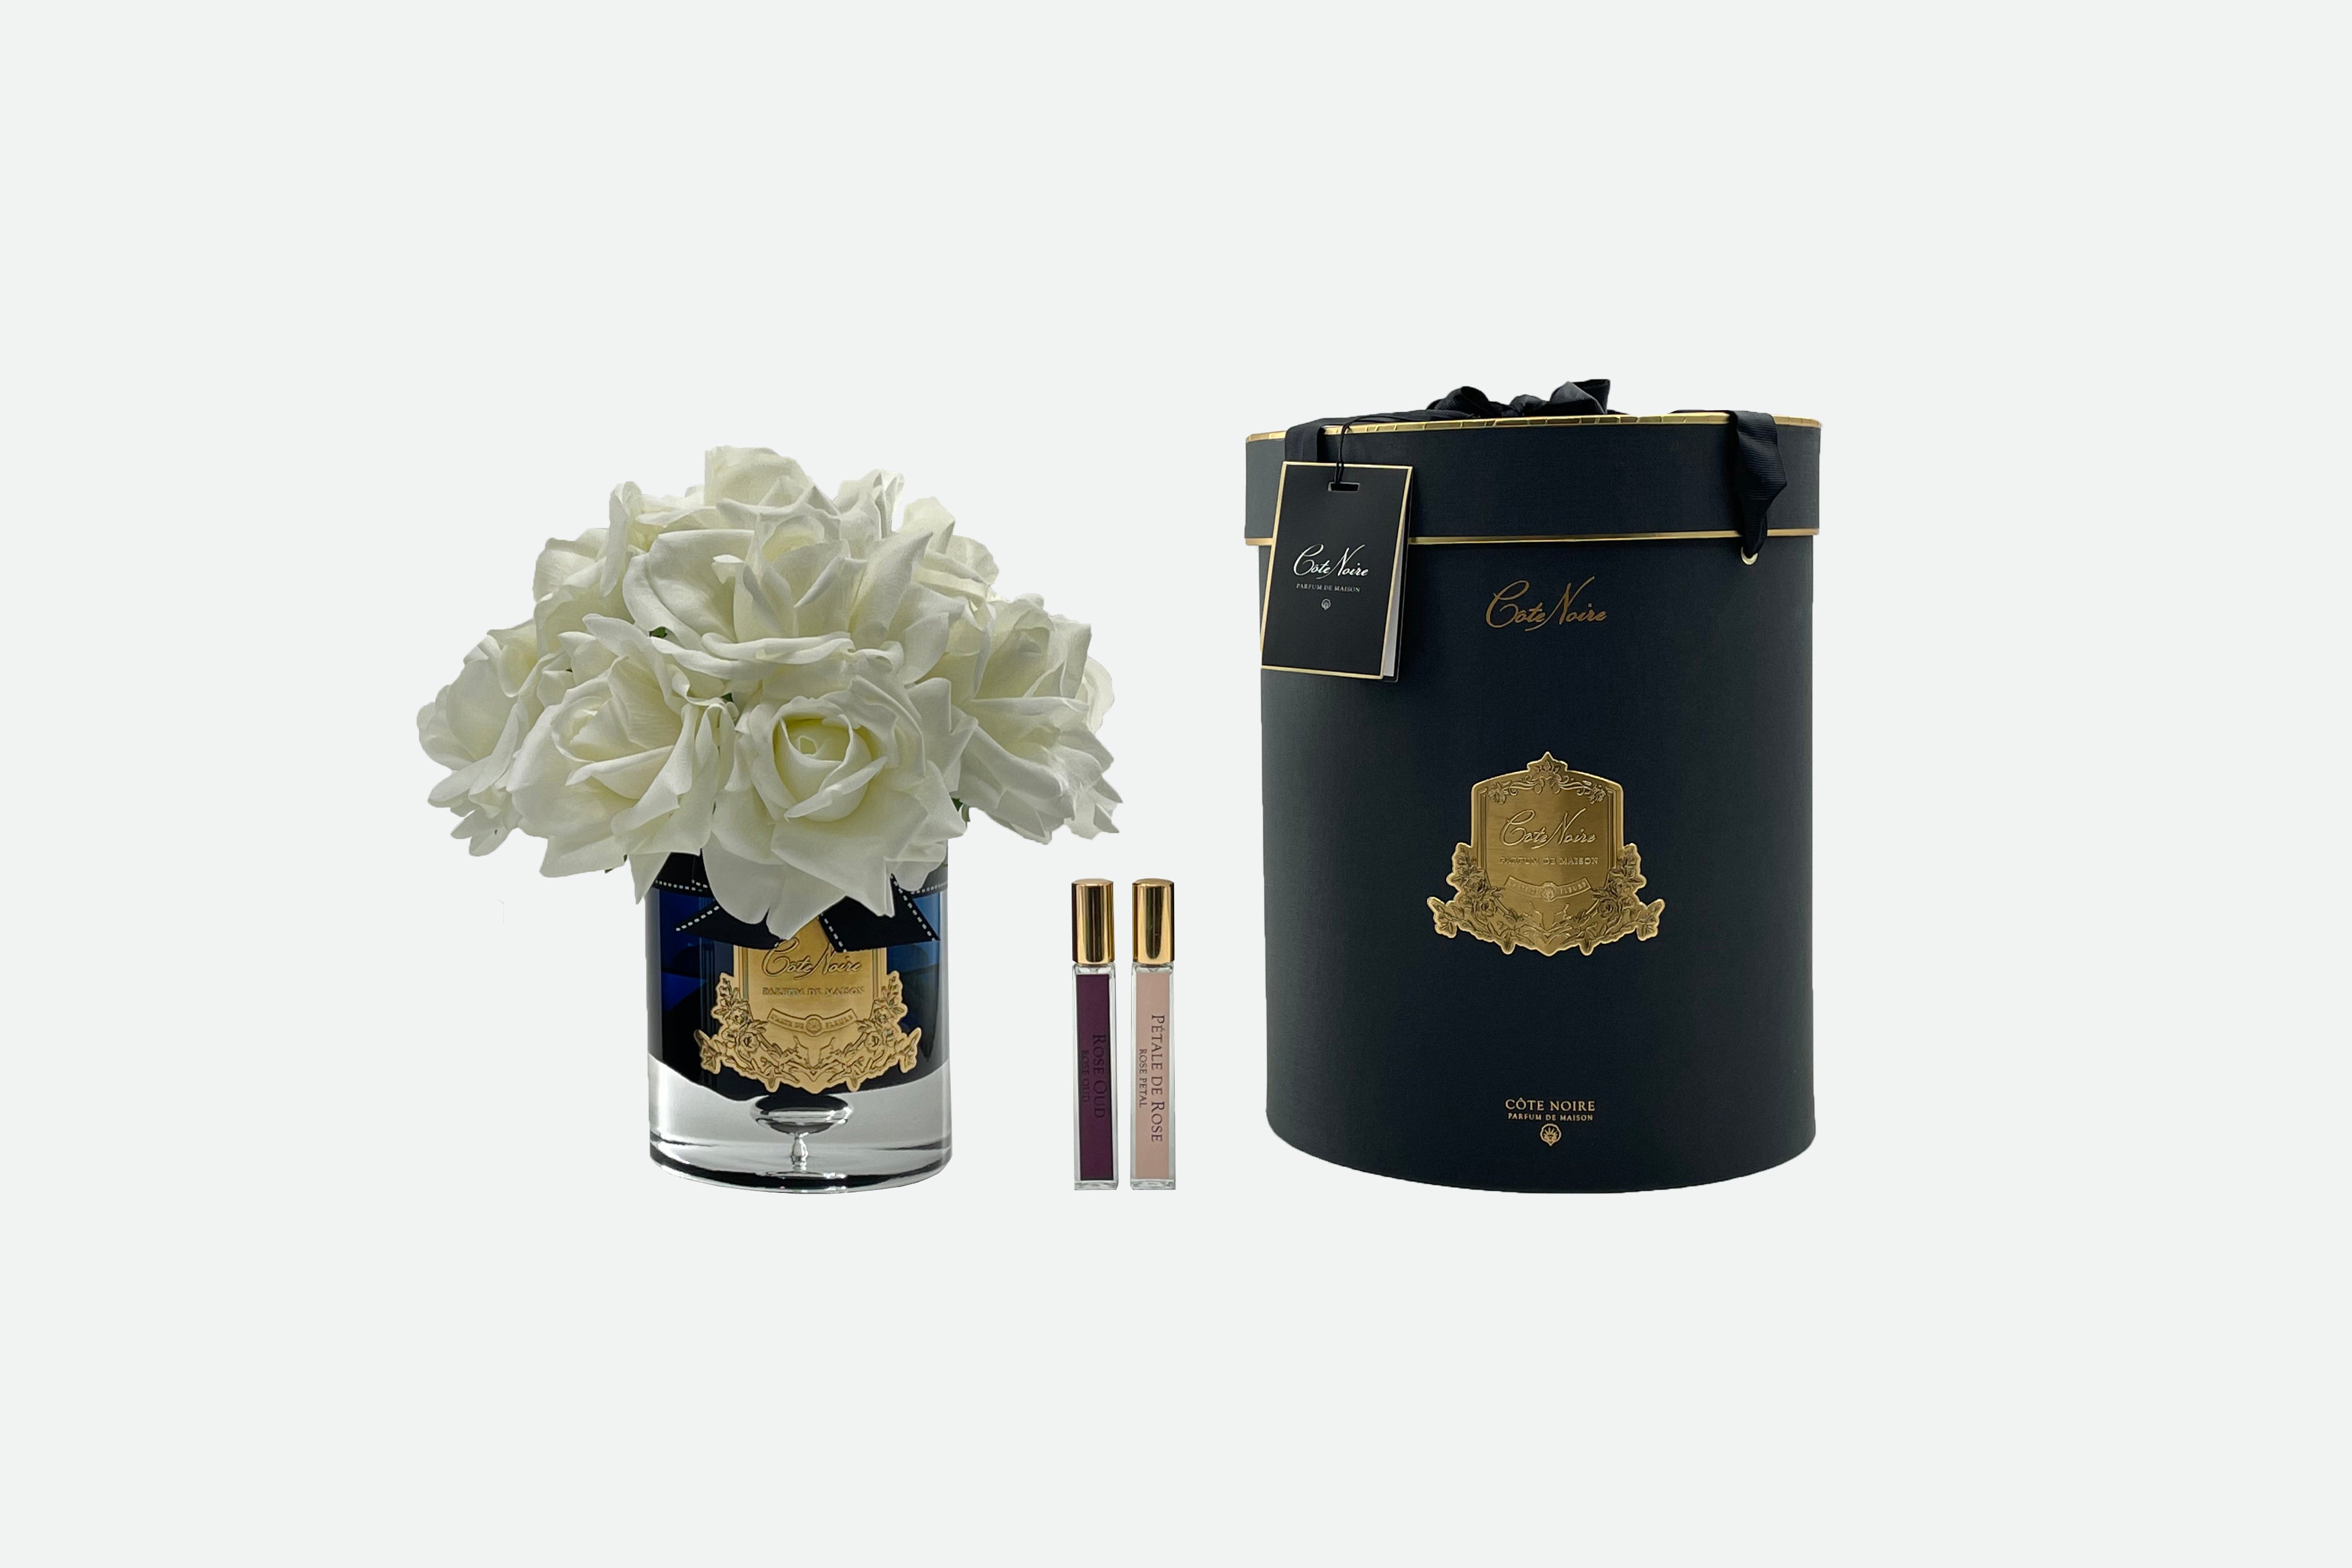 13 weisse rosen arrangiert in einer edlen glasvase, zwei parfumsprays und eine luxurioese runde dunkle geschenkbox.